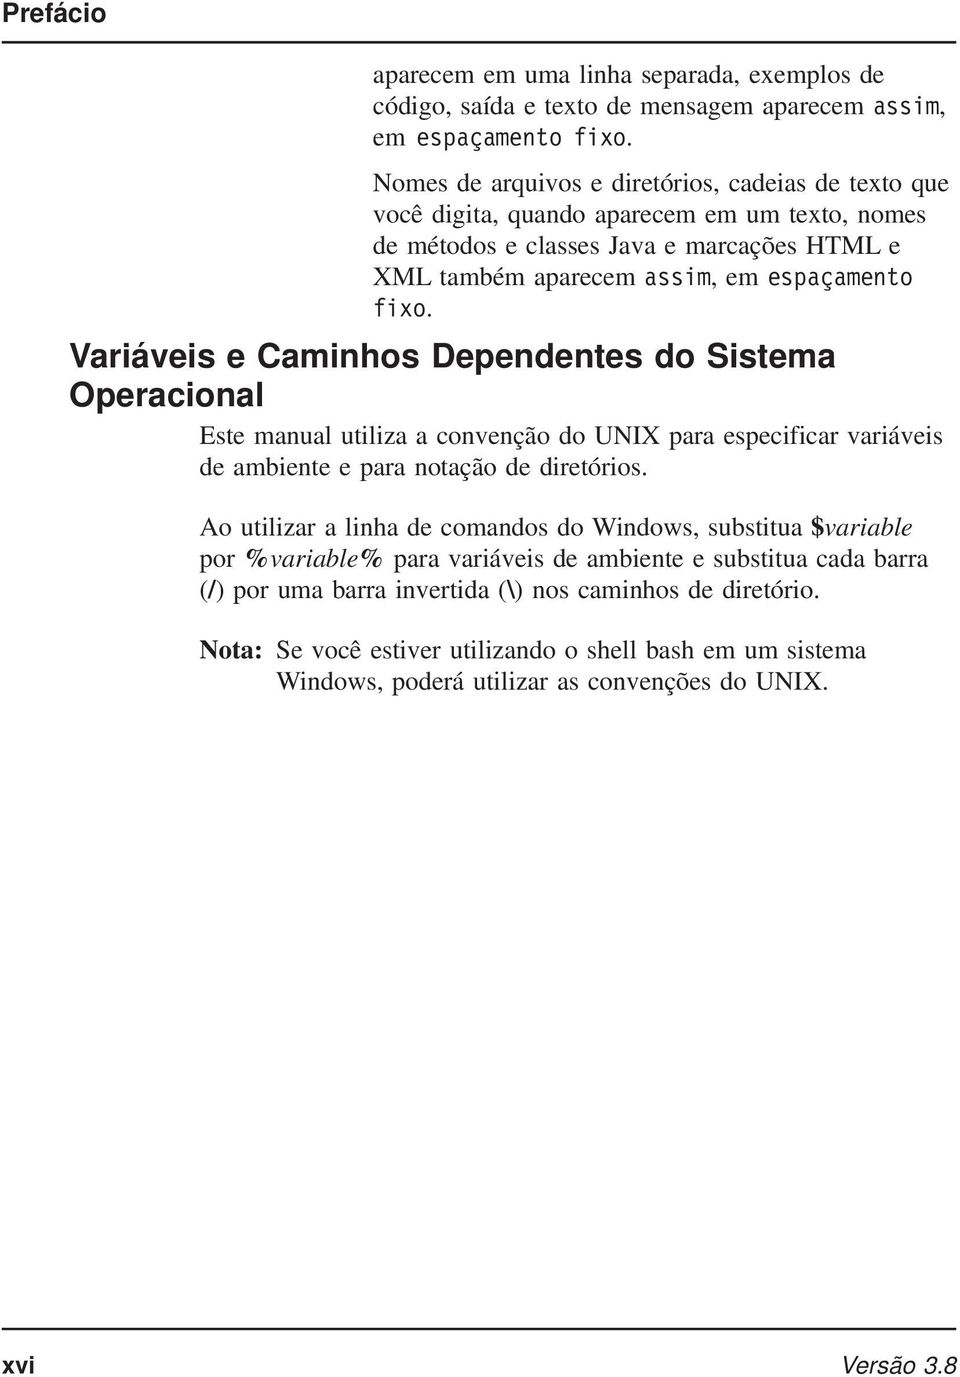 Variáveis e Caminhos Dependentes do Sistema Operacional Este manual utiliza a convenção do UNIX para especificar variáveis de ambiente e para notação de diretórios.